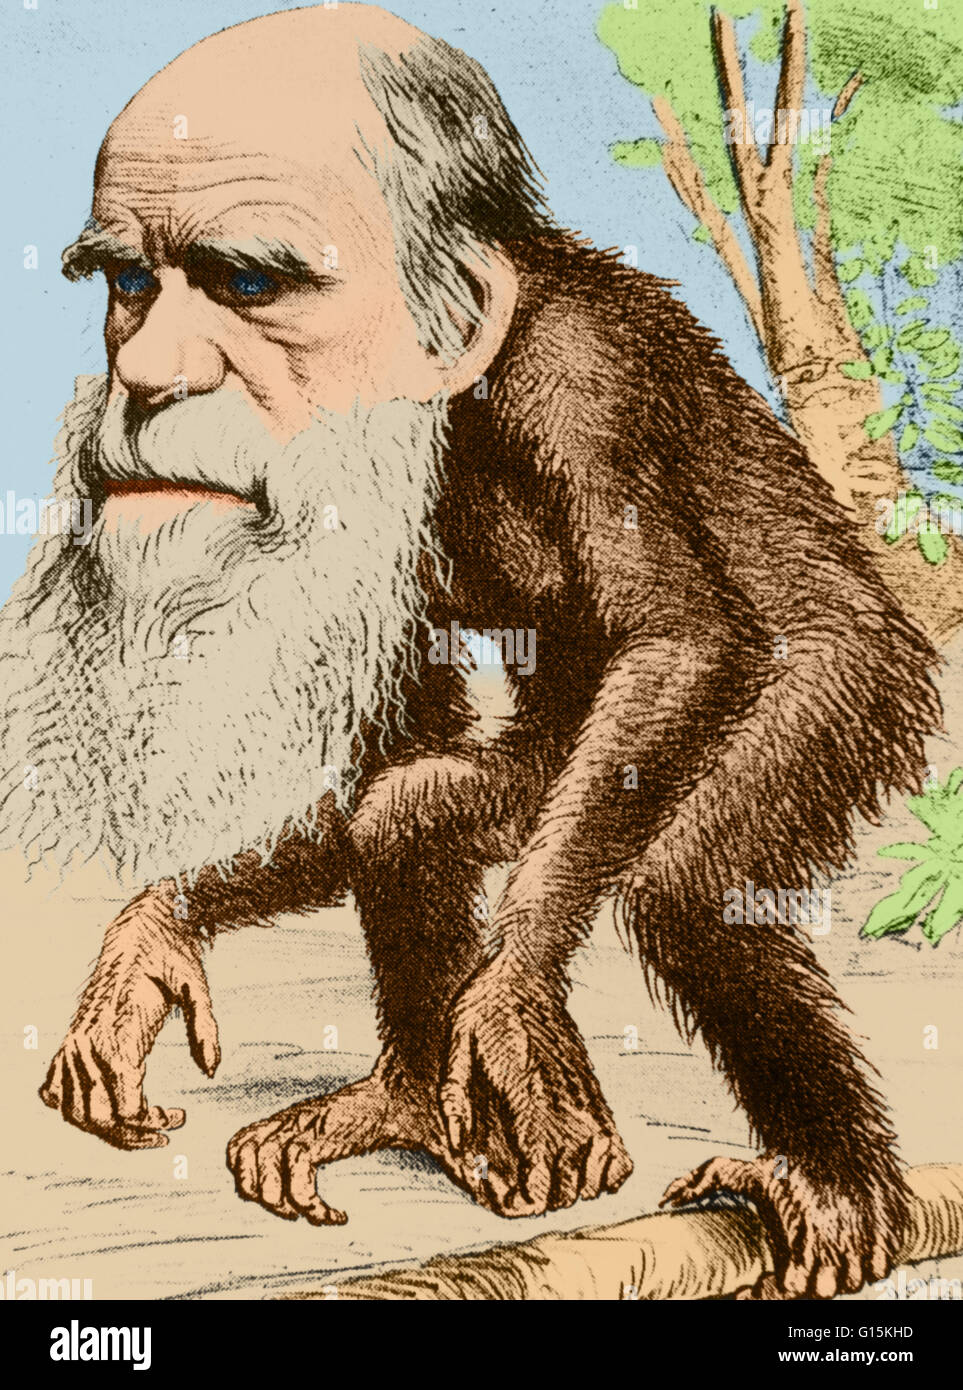 Farbe verstärkt Illustration von Charles Darwin dargestellt als ein "ehrwürdigen Orang-Outang", mit dem Untertitel "Beitrag zur unnatürliche Geschichte", erschienen 22. März 1871, in der satirischen Zeitschrift "The Hornet". Charles Robert Darwin (1809-1882) war ein englischer n Stockfoto